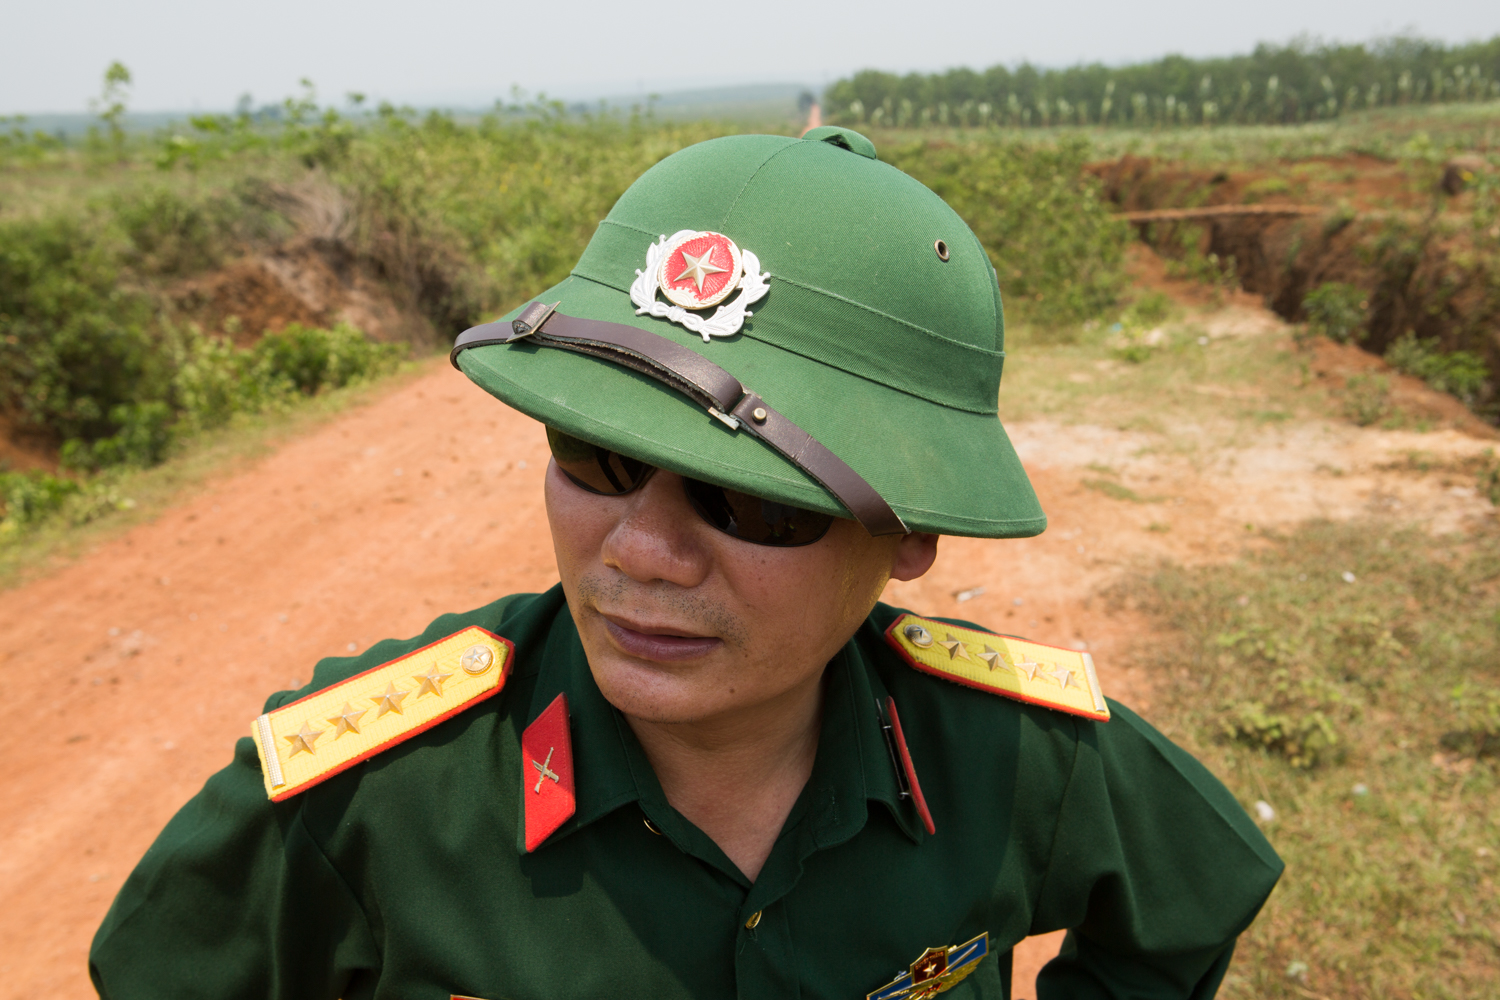 Eric Kruszewski photographs a portrait of an officer in Vietnam.